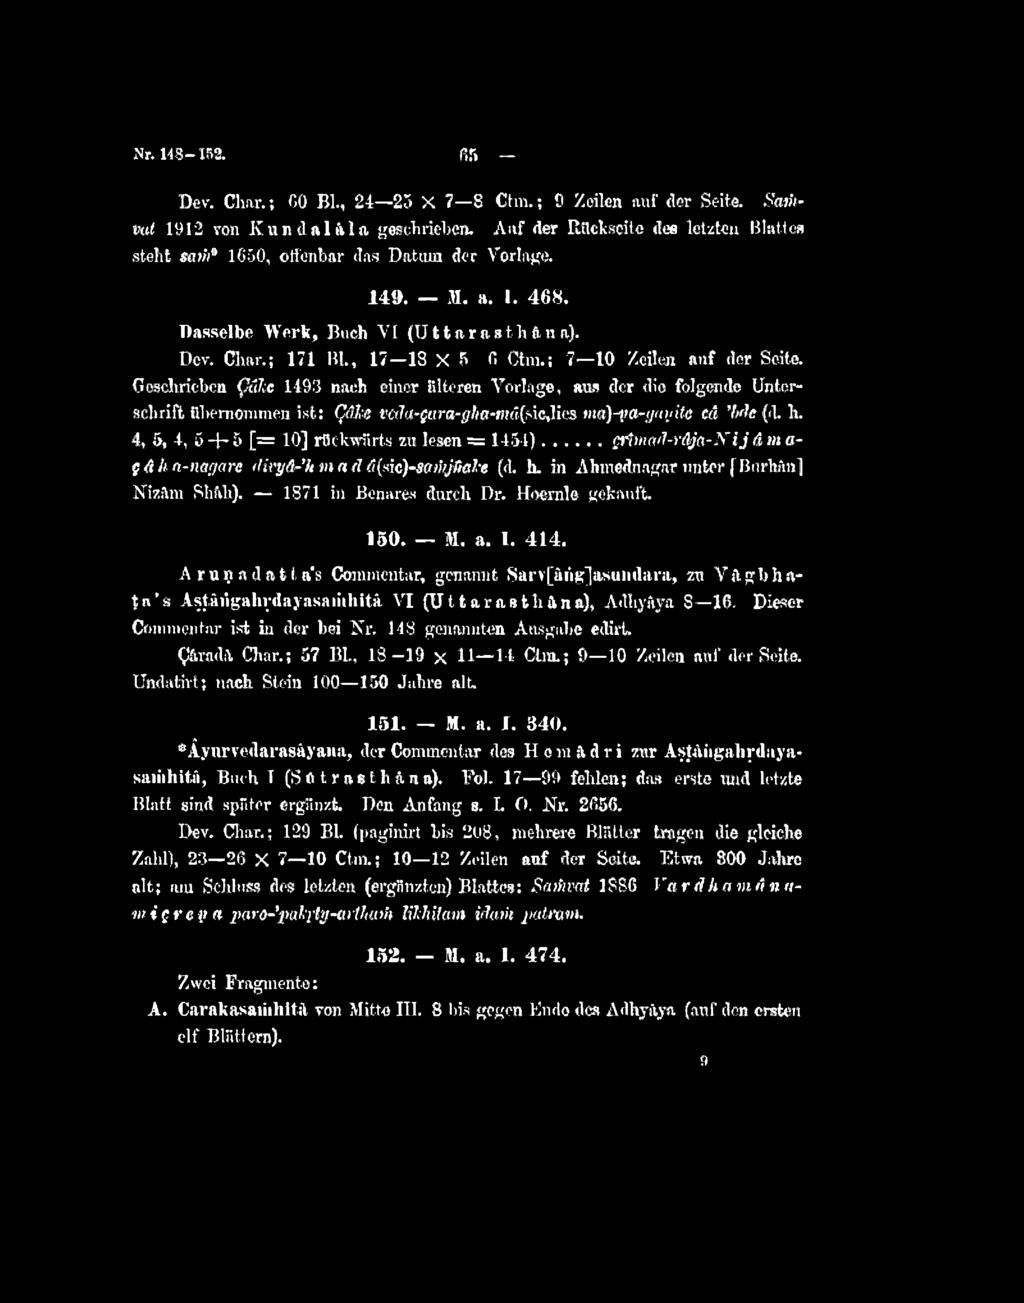 ; 7 10 Zeilen auf der Seite. Gesdirieben QaJie 1493 nach einer älteren Vorlage, aus der die foig<ende Unterachrift ubemonunen ist: ^«ve(ki-fura-glia-mä{sic^^ ma)tta-ffai!^ite cd 'fxk (d. K.